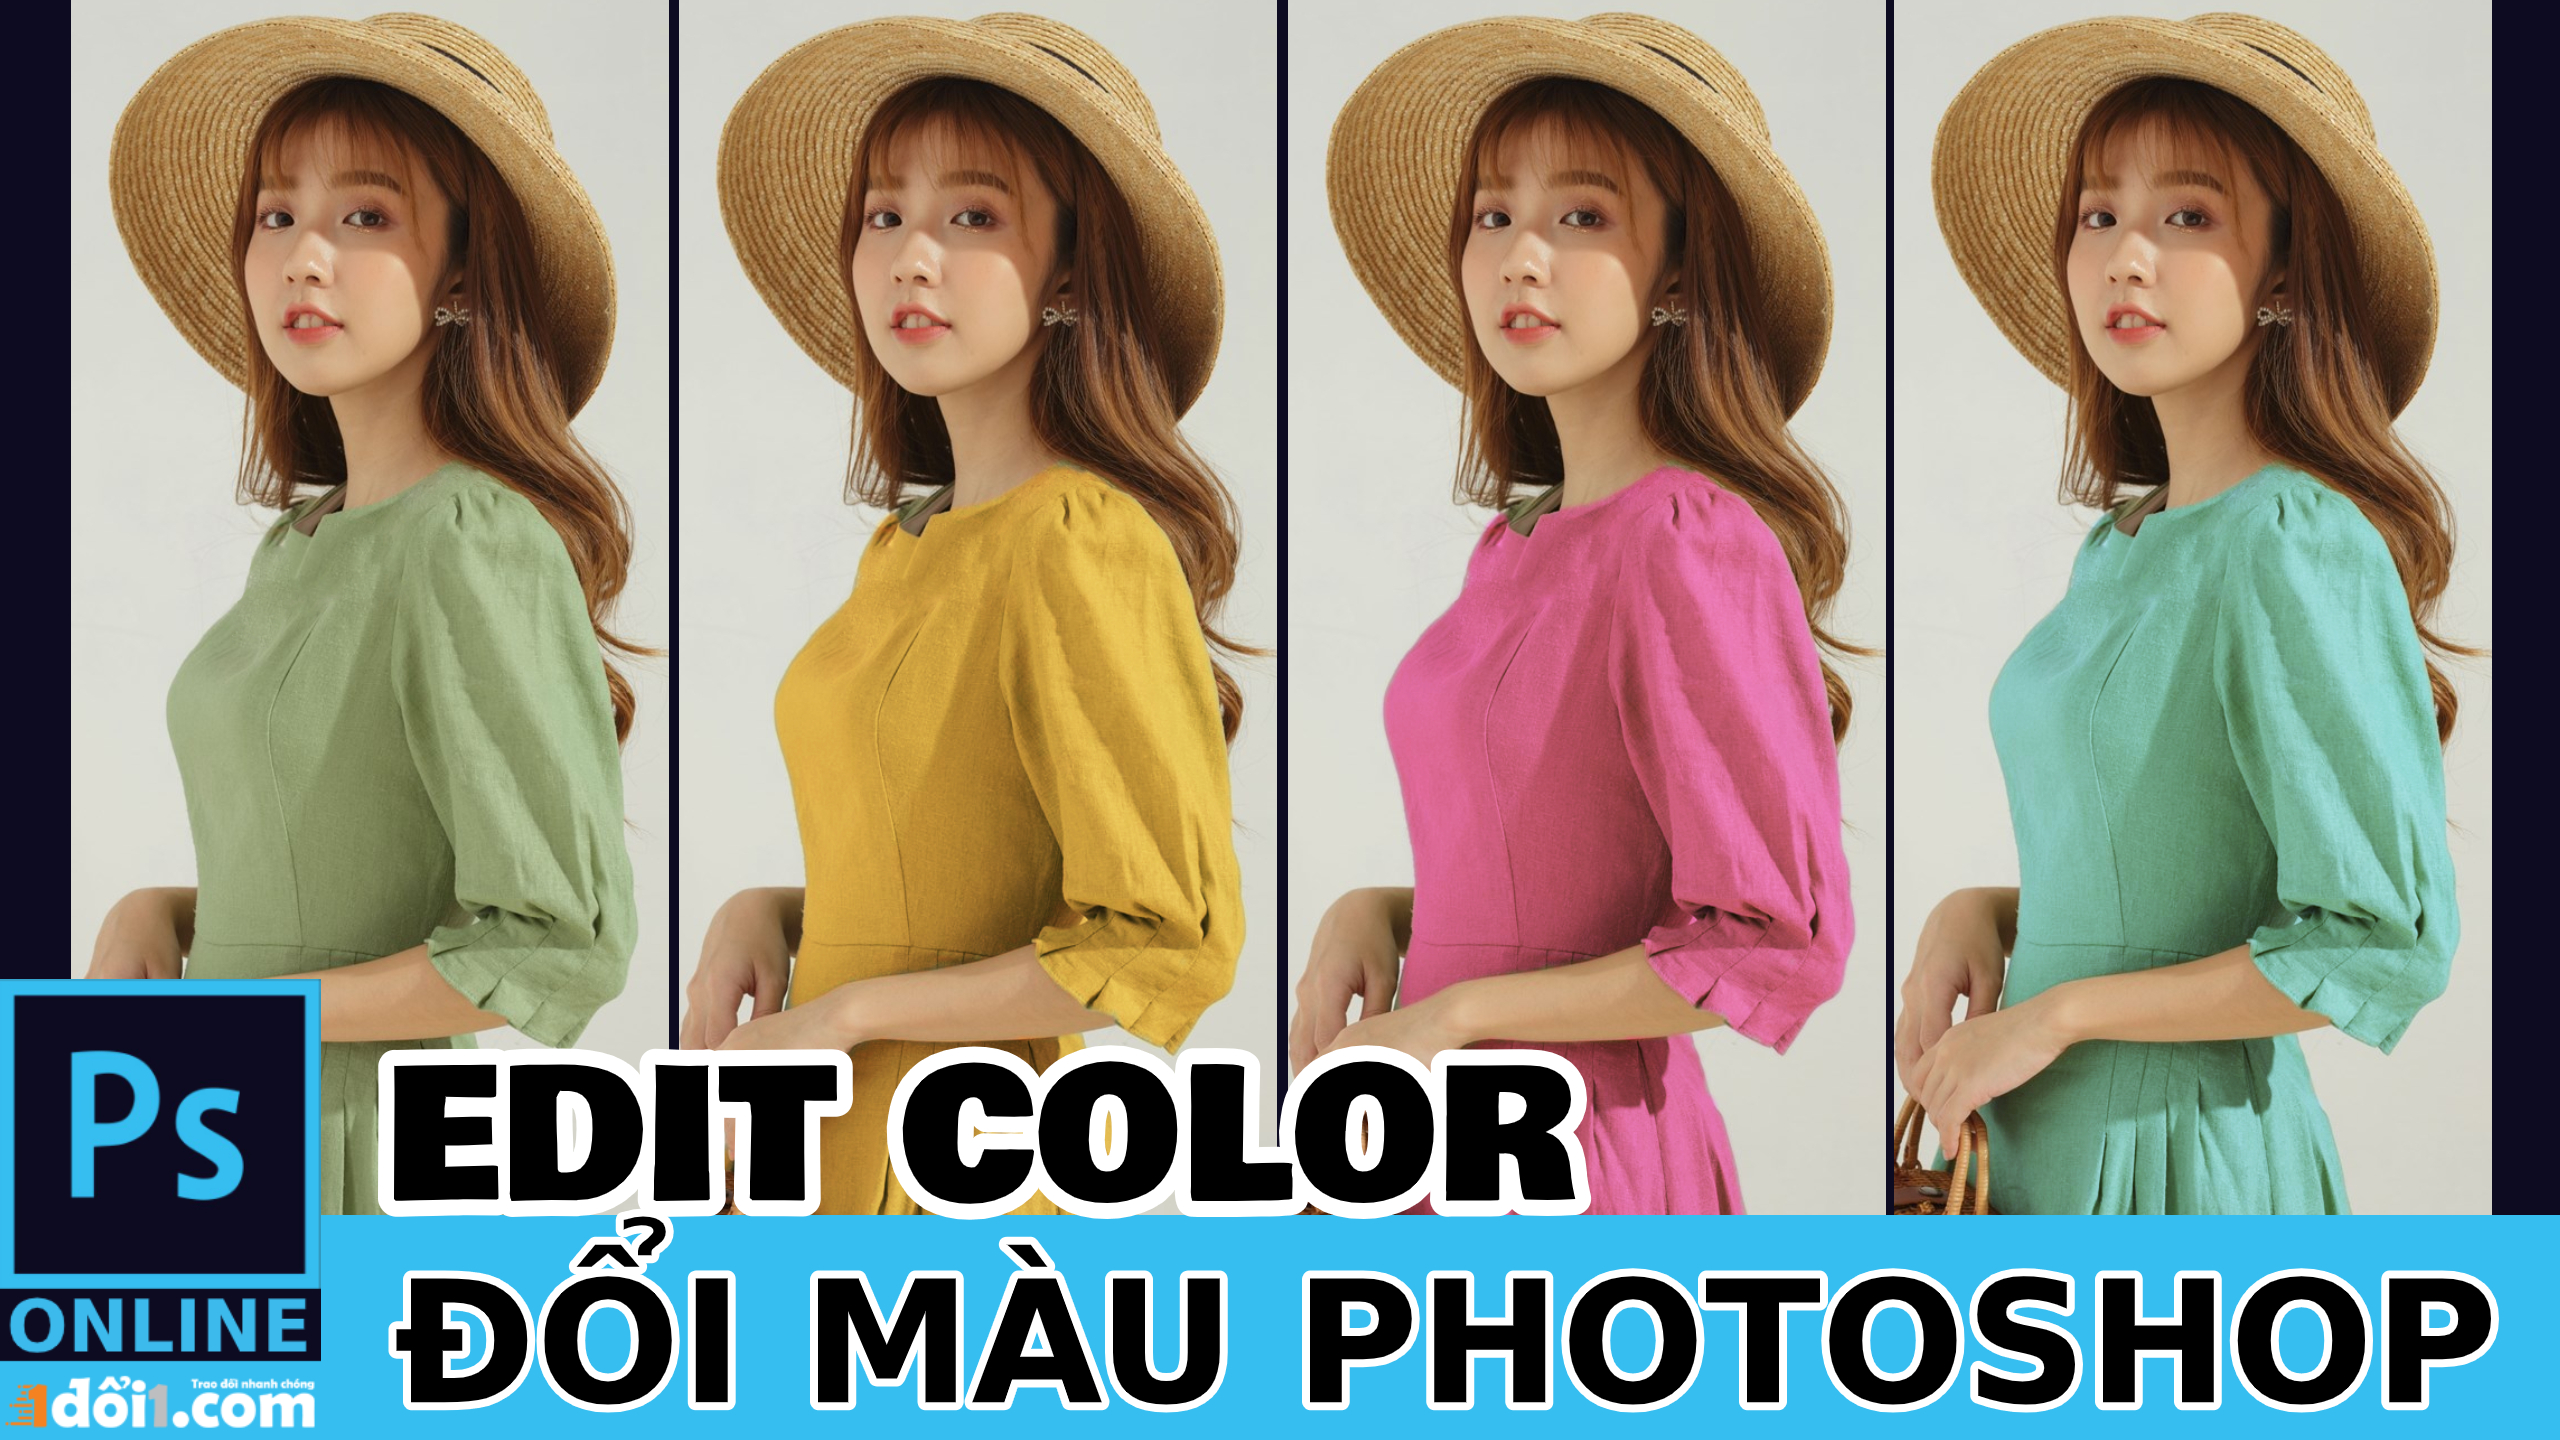 Cach doi mau trong photoshop online chinh san pham ban hang Cách đổi màu trong photoshop online chỉnh sản phẩm bán hàng